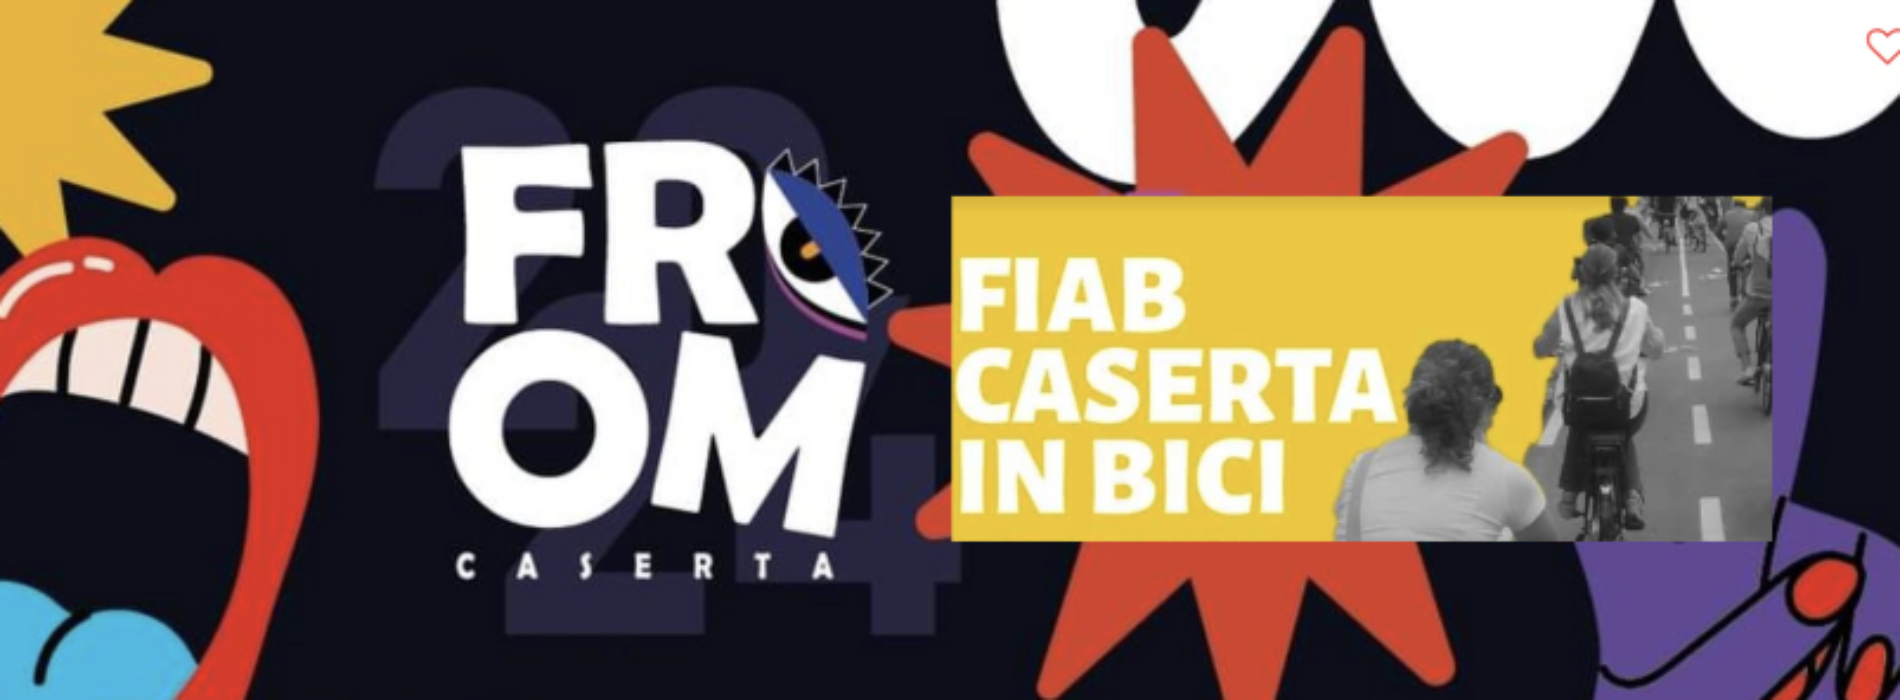 Fiab Caserta in Bici, l’associazione presente al Festival From